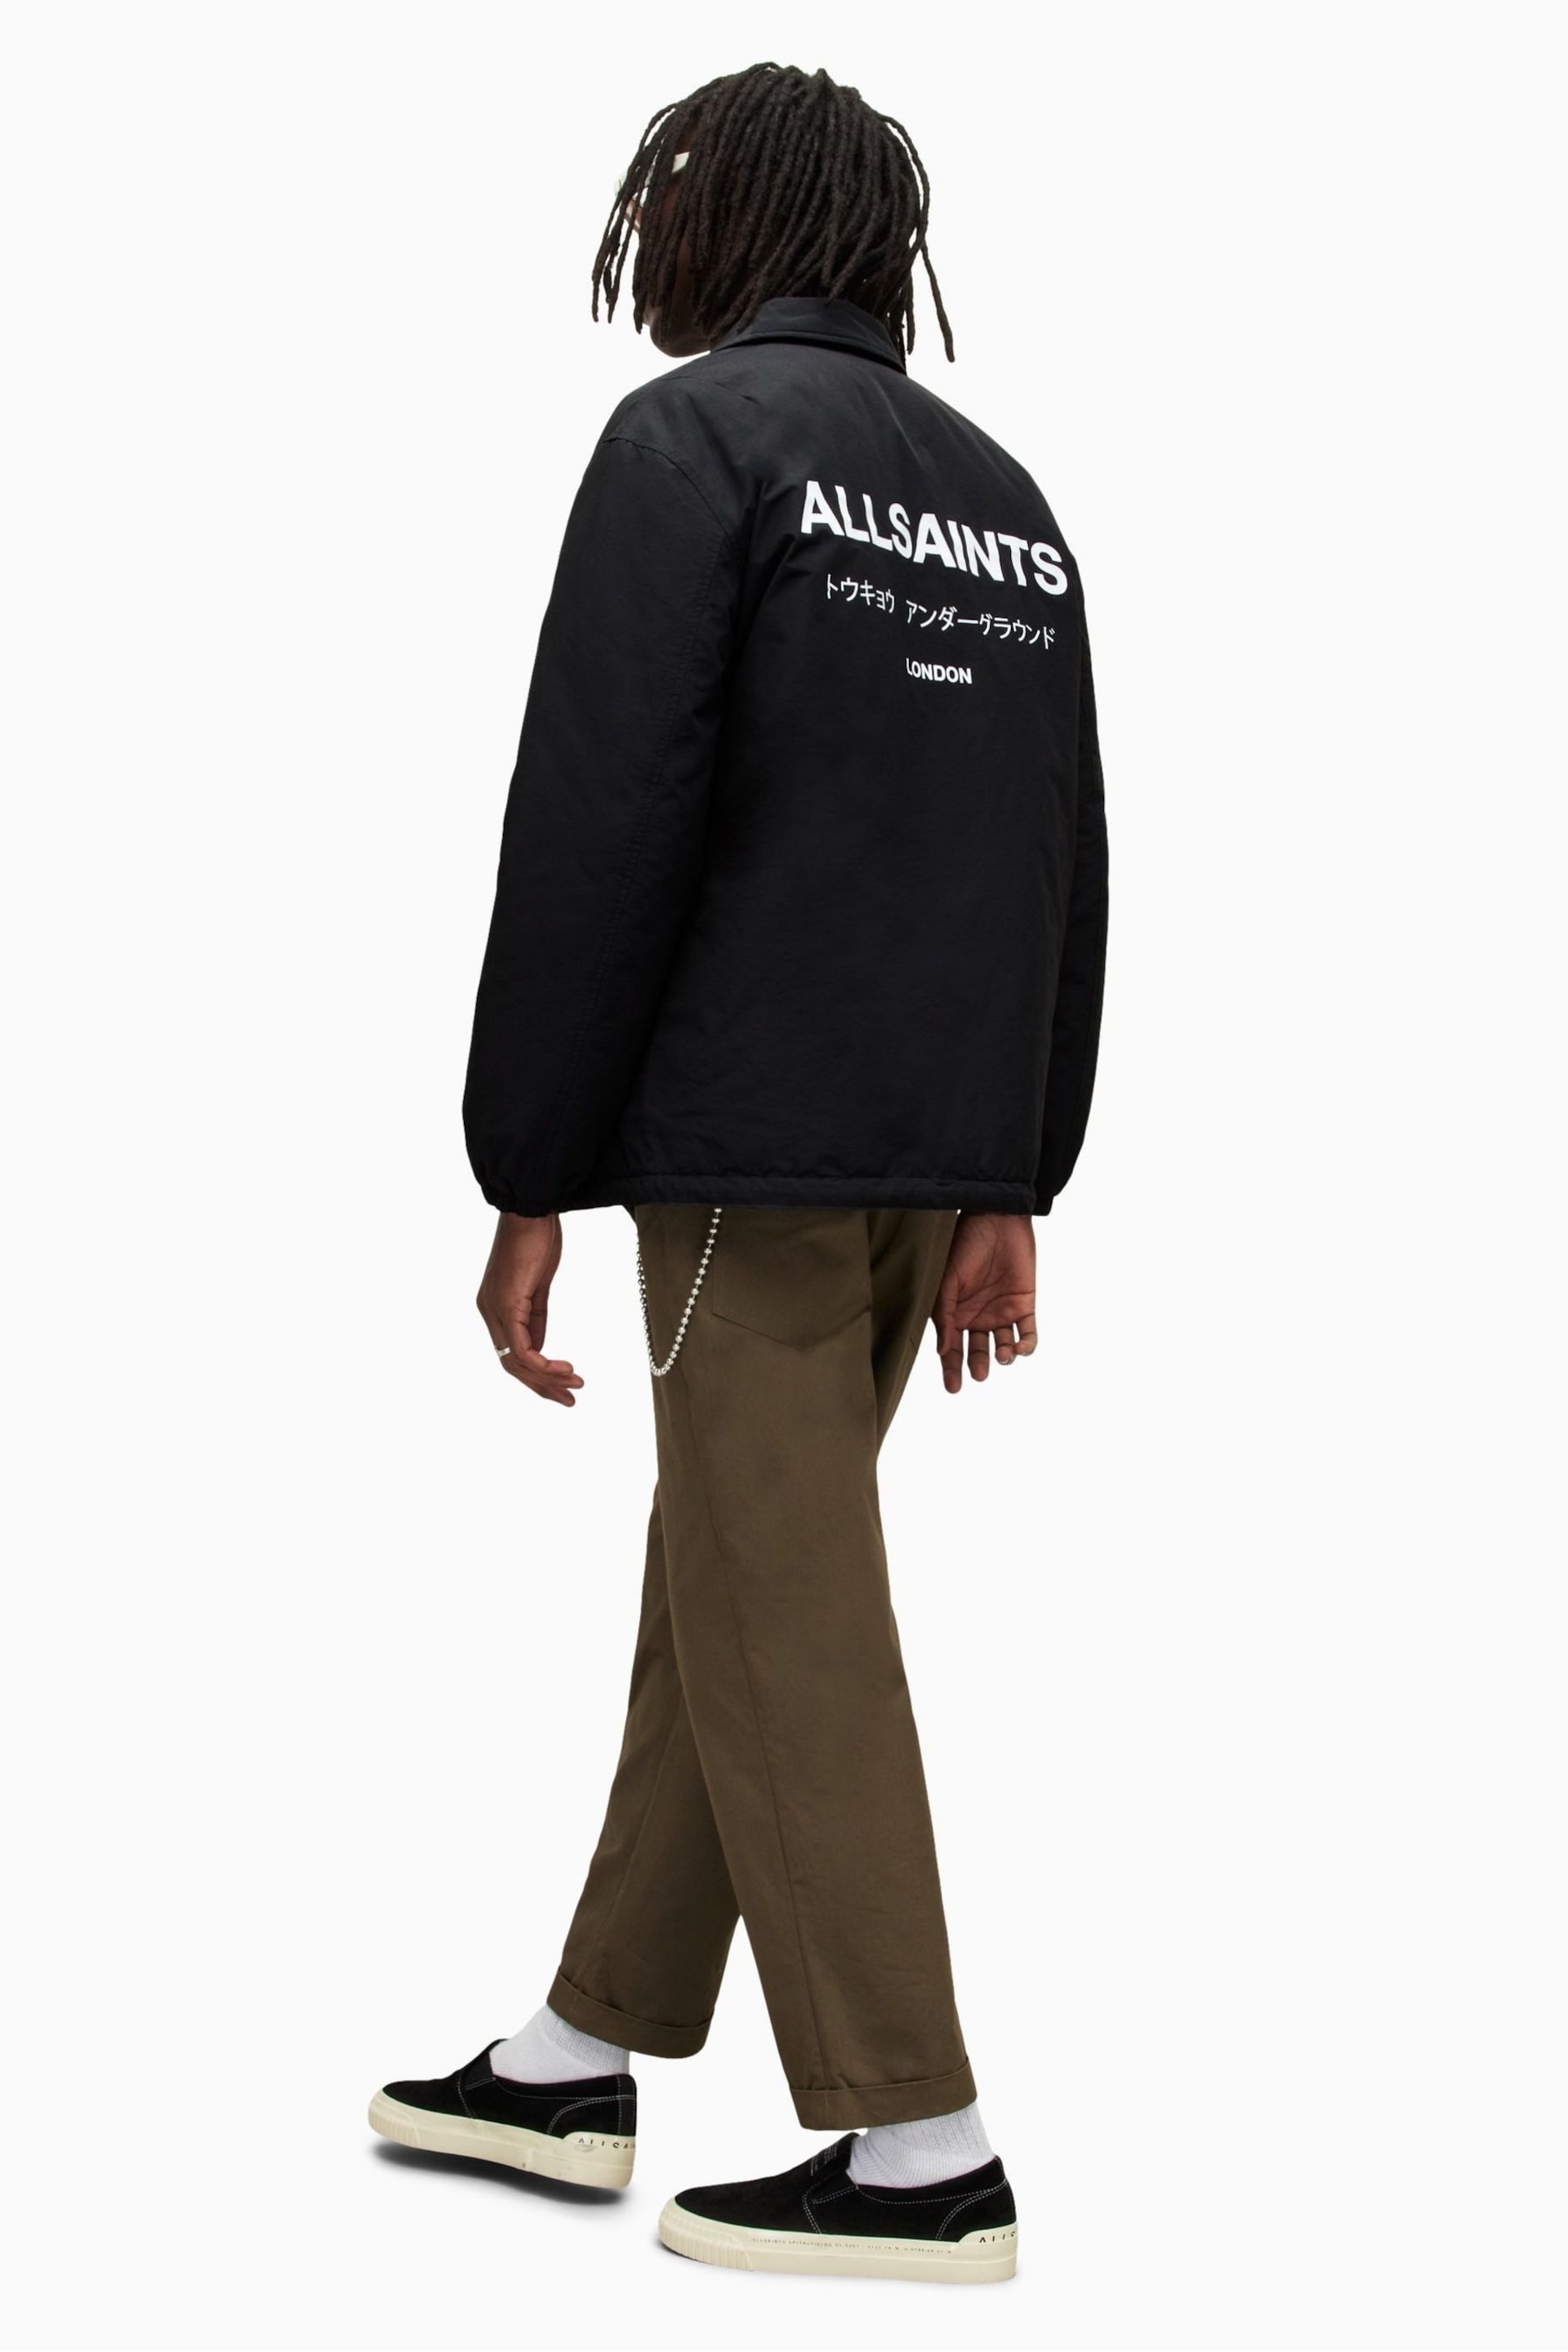 AllSaints Black Underground Coach Jacket - Image 2 of 9